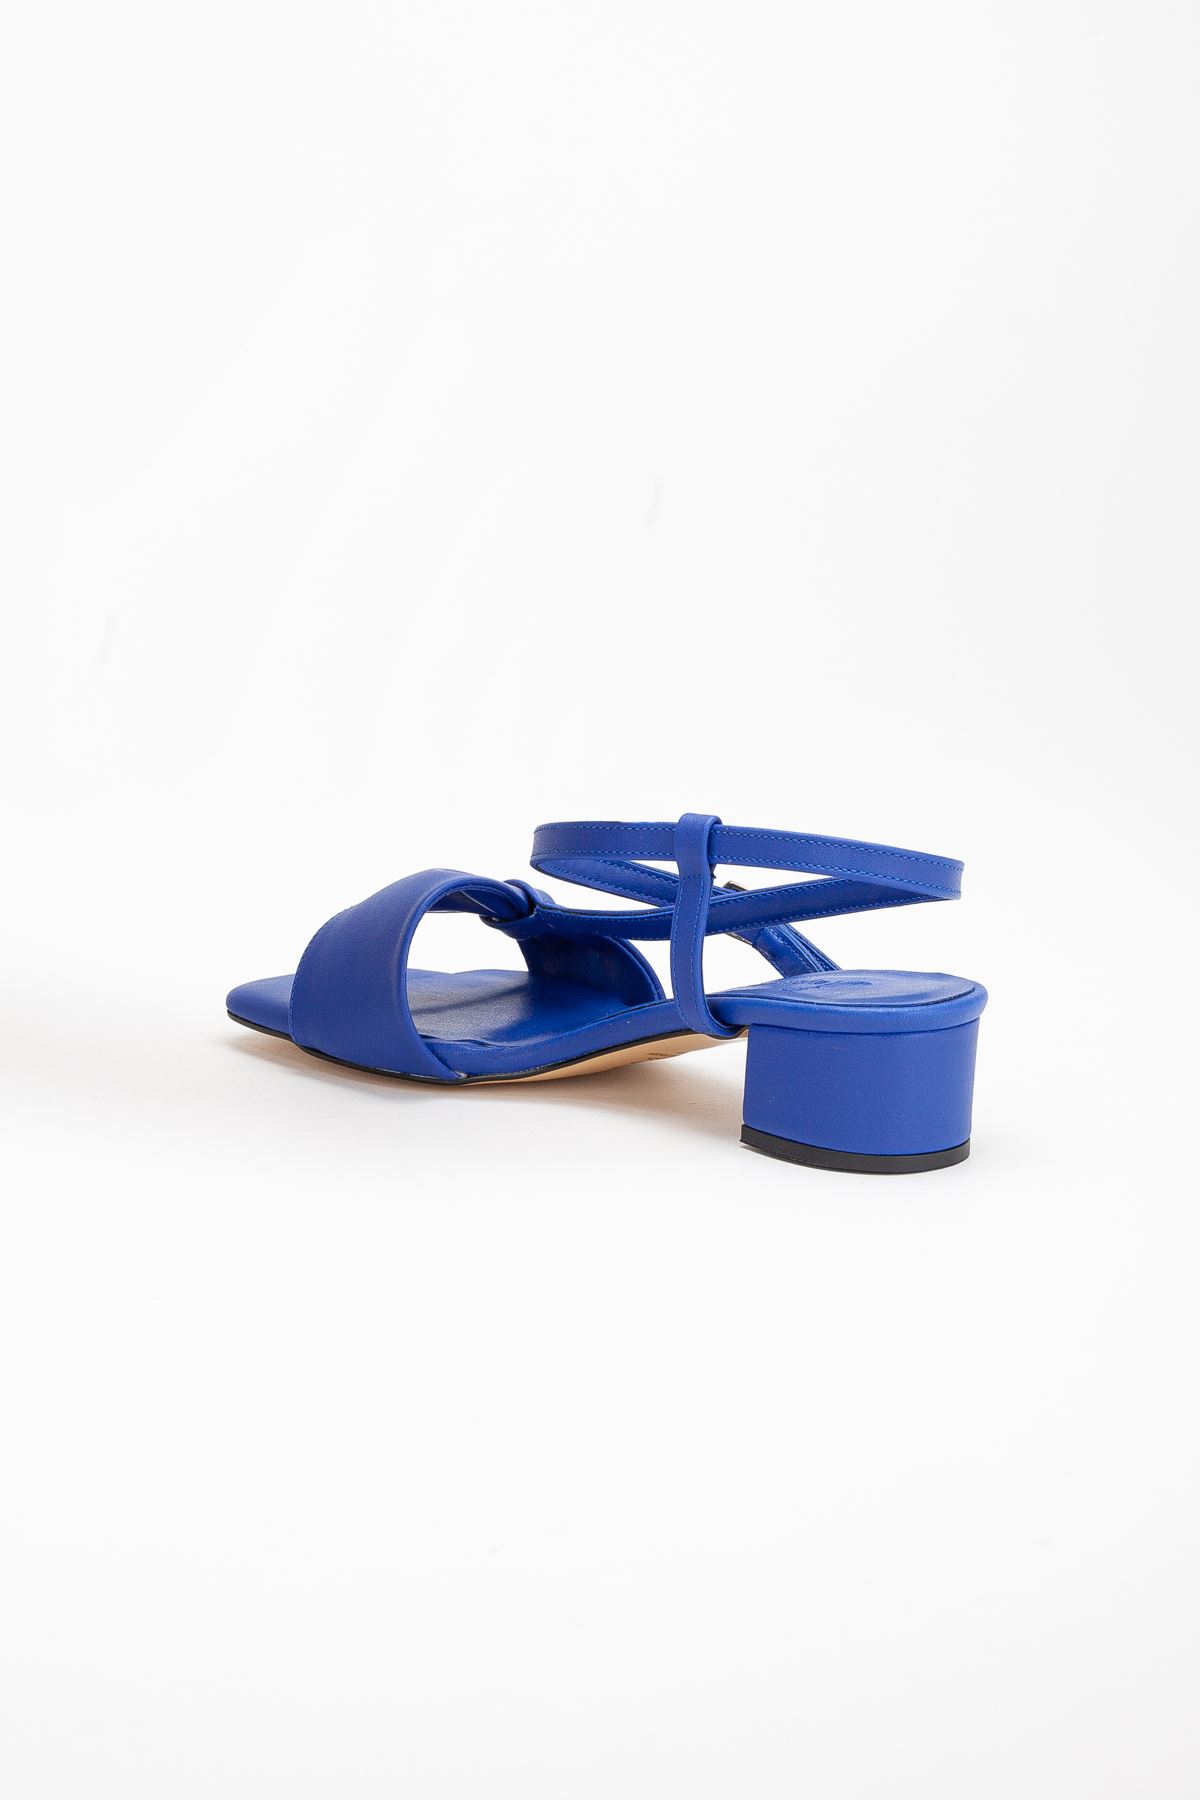 Nora Kadın Arkası Açık Topuklu Ayakkabı Mavi Cilt